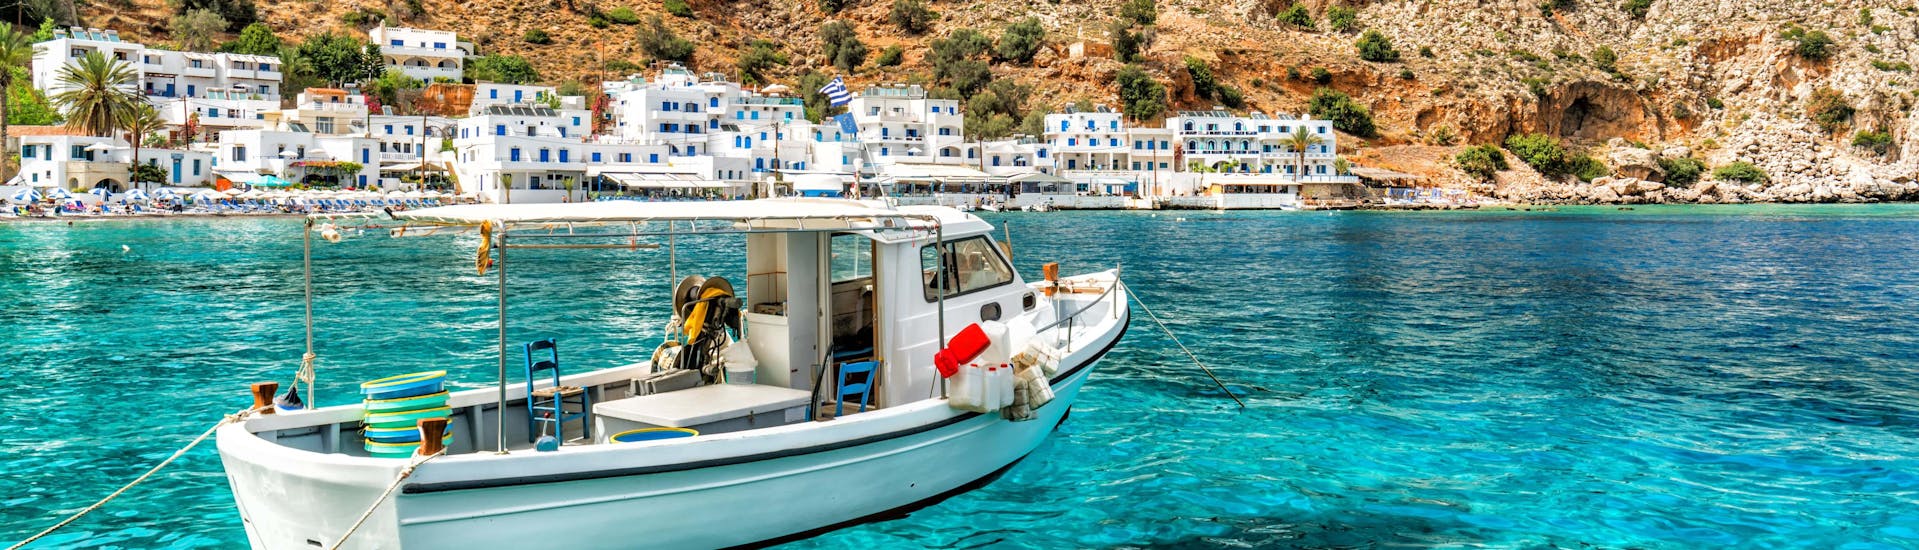 Een boot op het kristalheldere water voor de kust van Kreta, een populaire bestemming voor boottochten. 